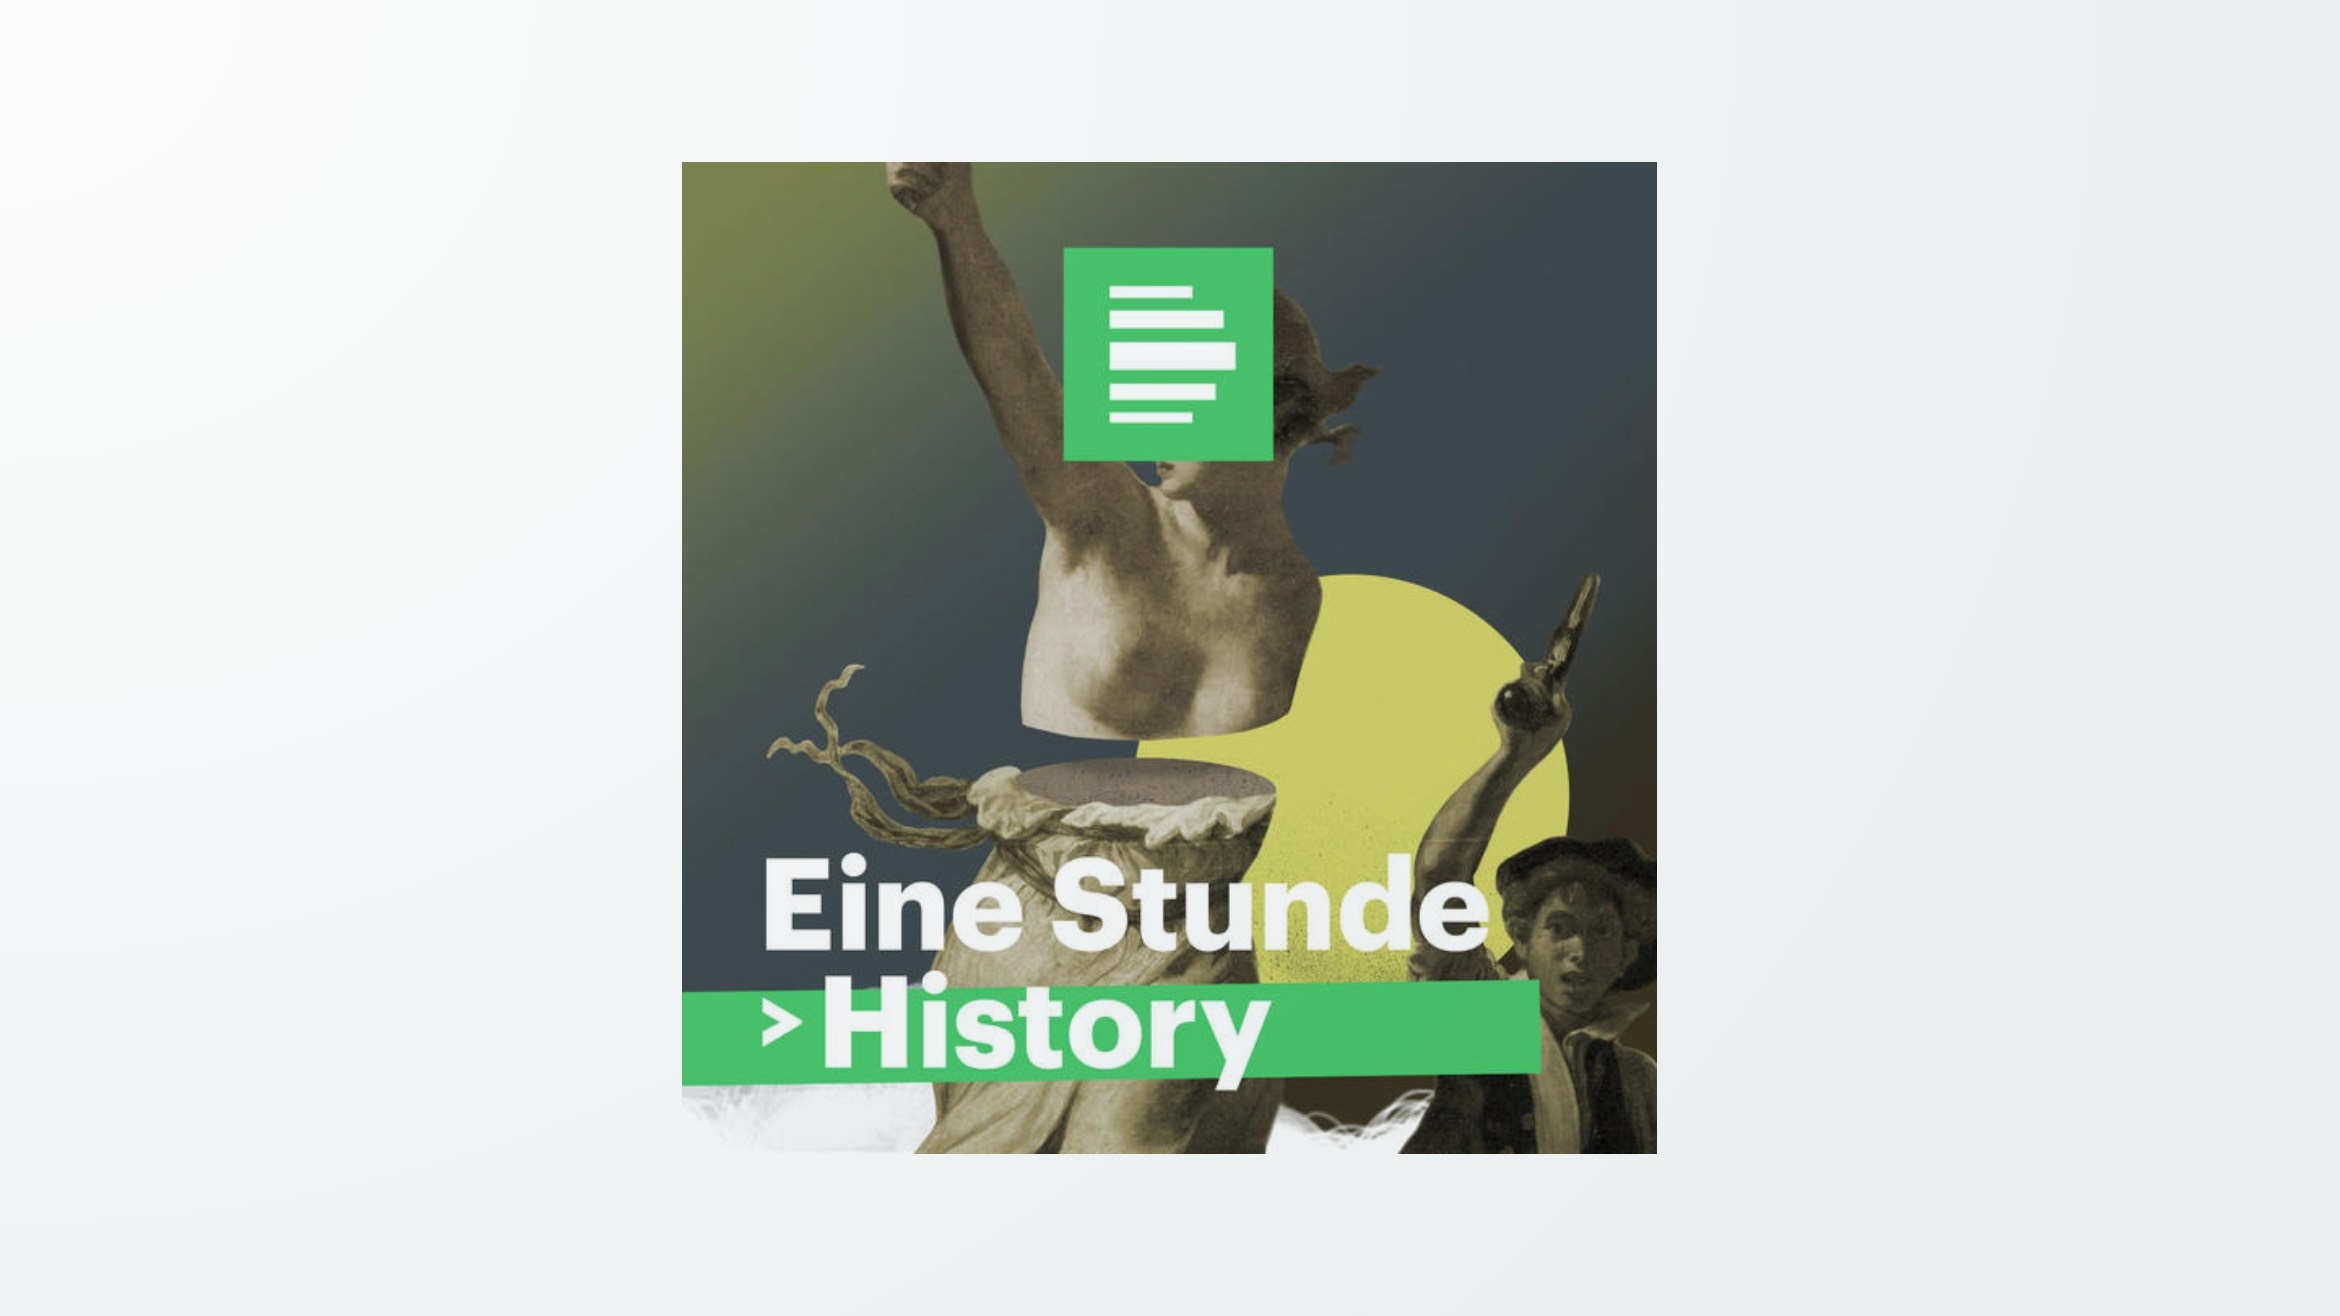 Der Podcast “Eine Stunde History” von Deutschlandfunk Nova